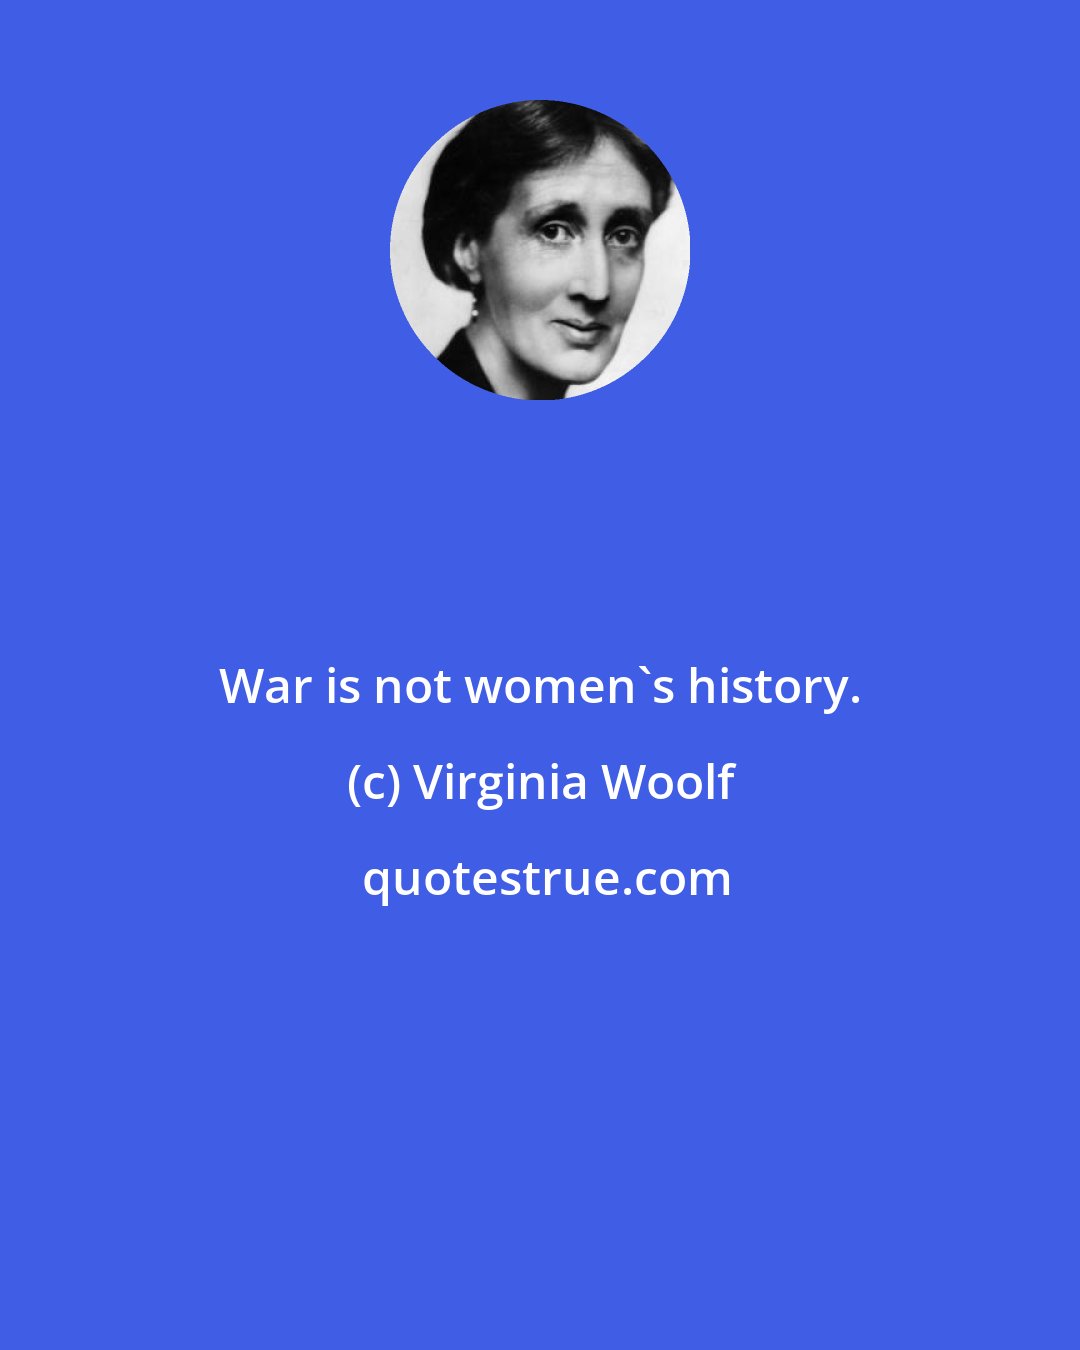 Virginia Woolf: War is not women's history.